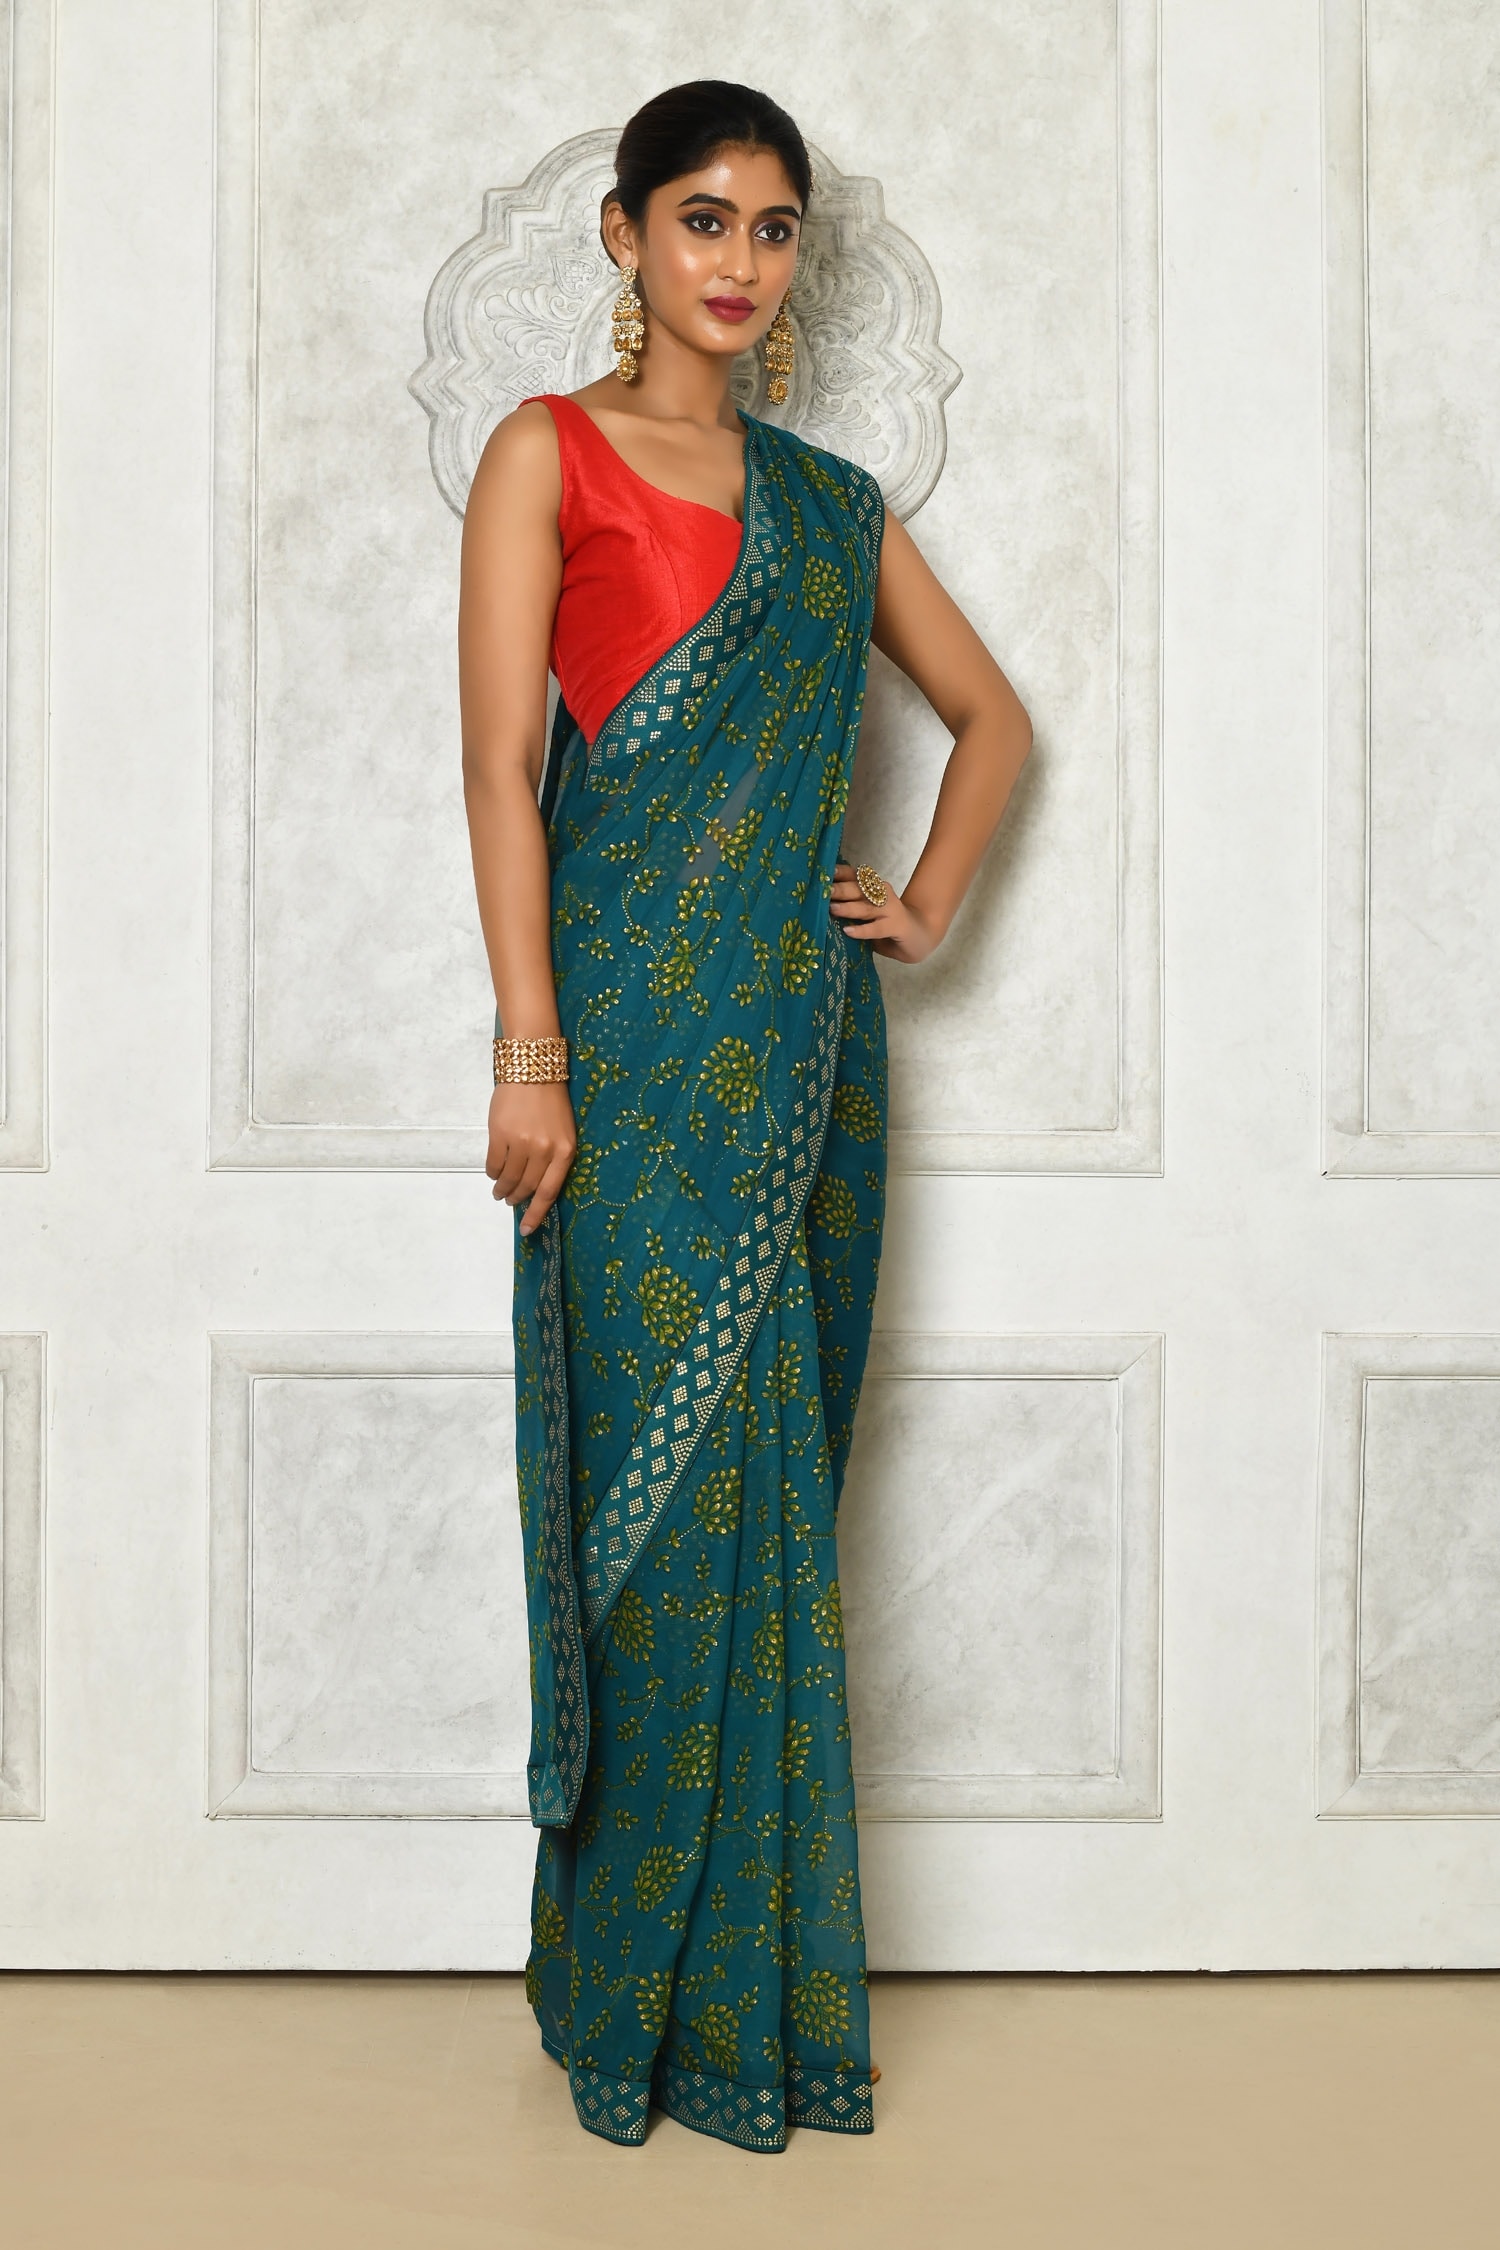 Saree - Buy Sarees Online in India - Sari Shopping Online | Myntra